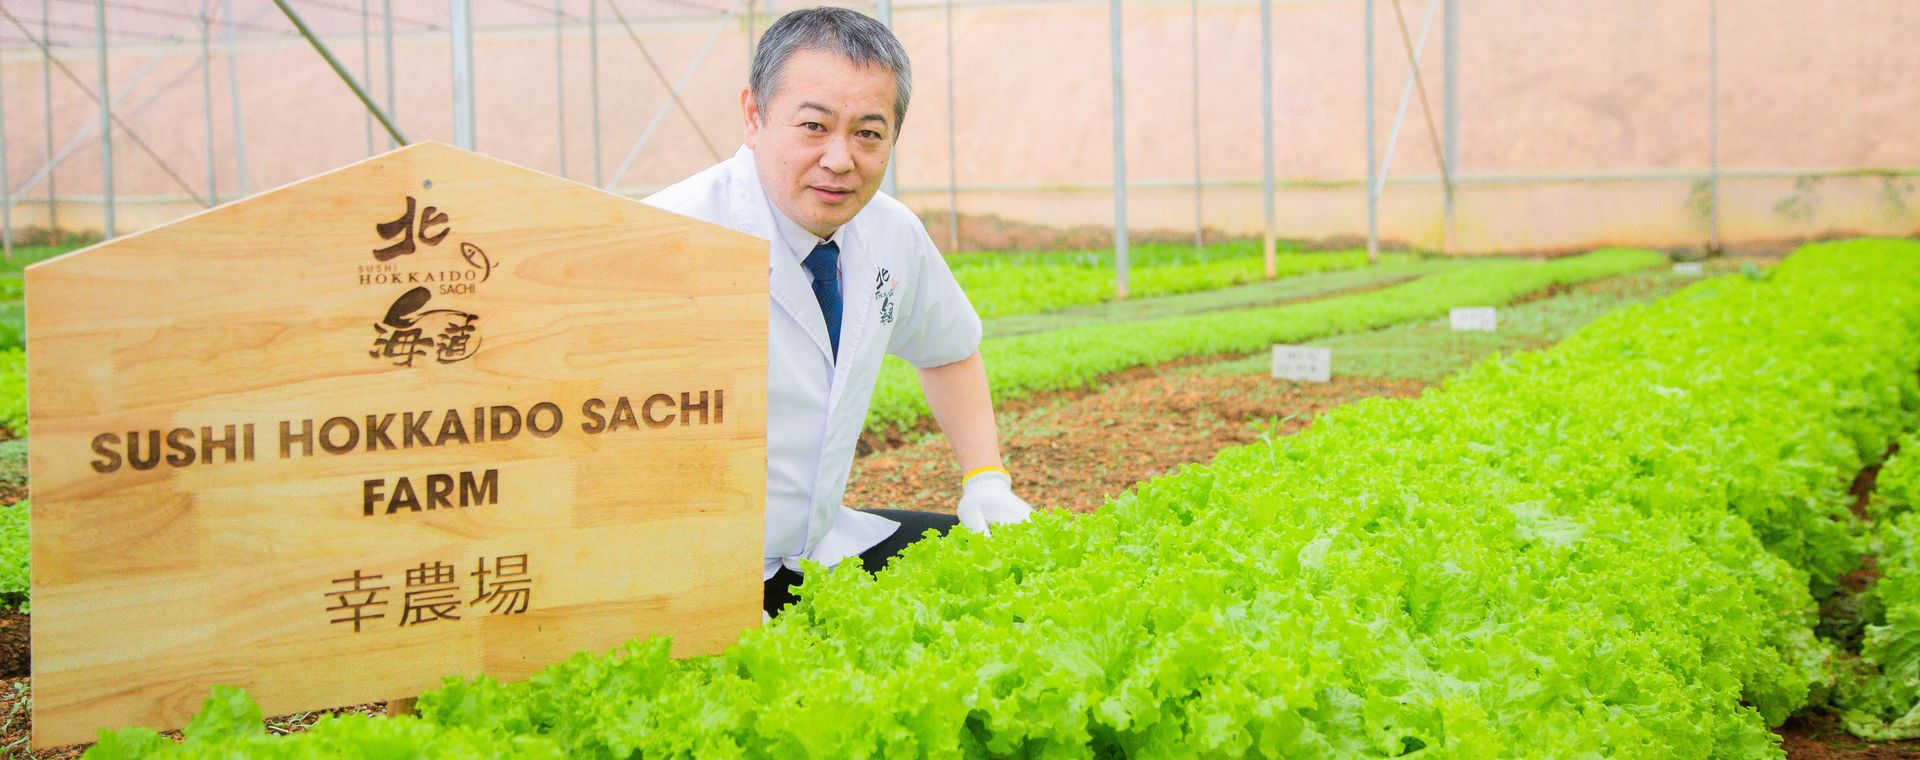 <span>Sushi Hokkaido Sachi Farm - Hành Trình từ Nông Trại tới Bàn Ăn</span>